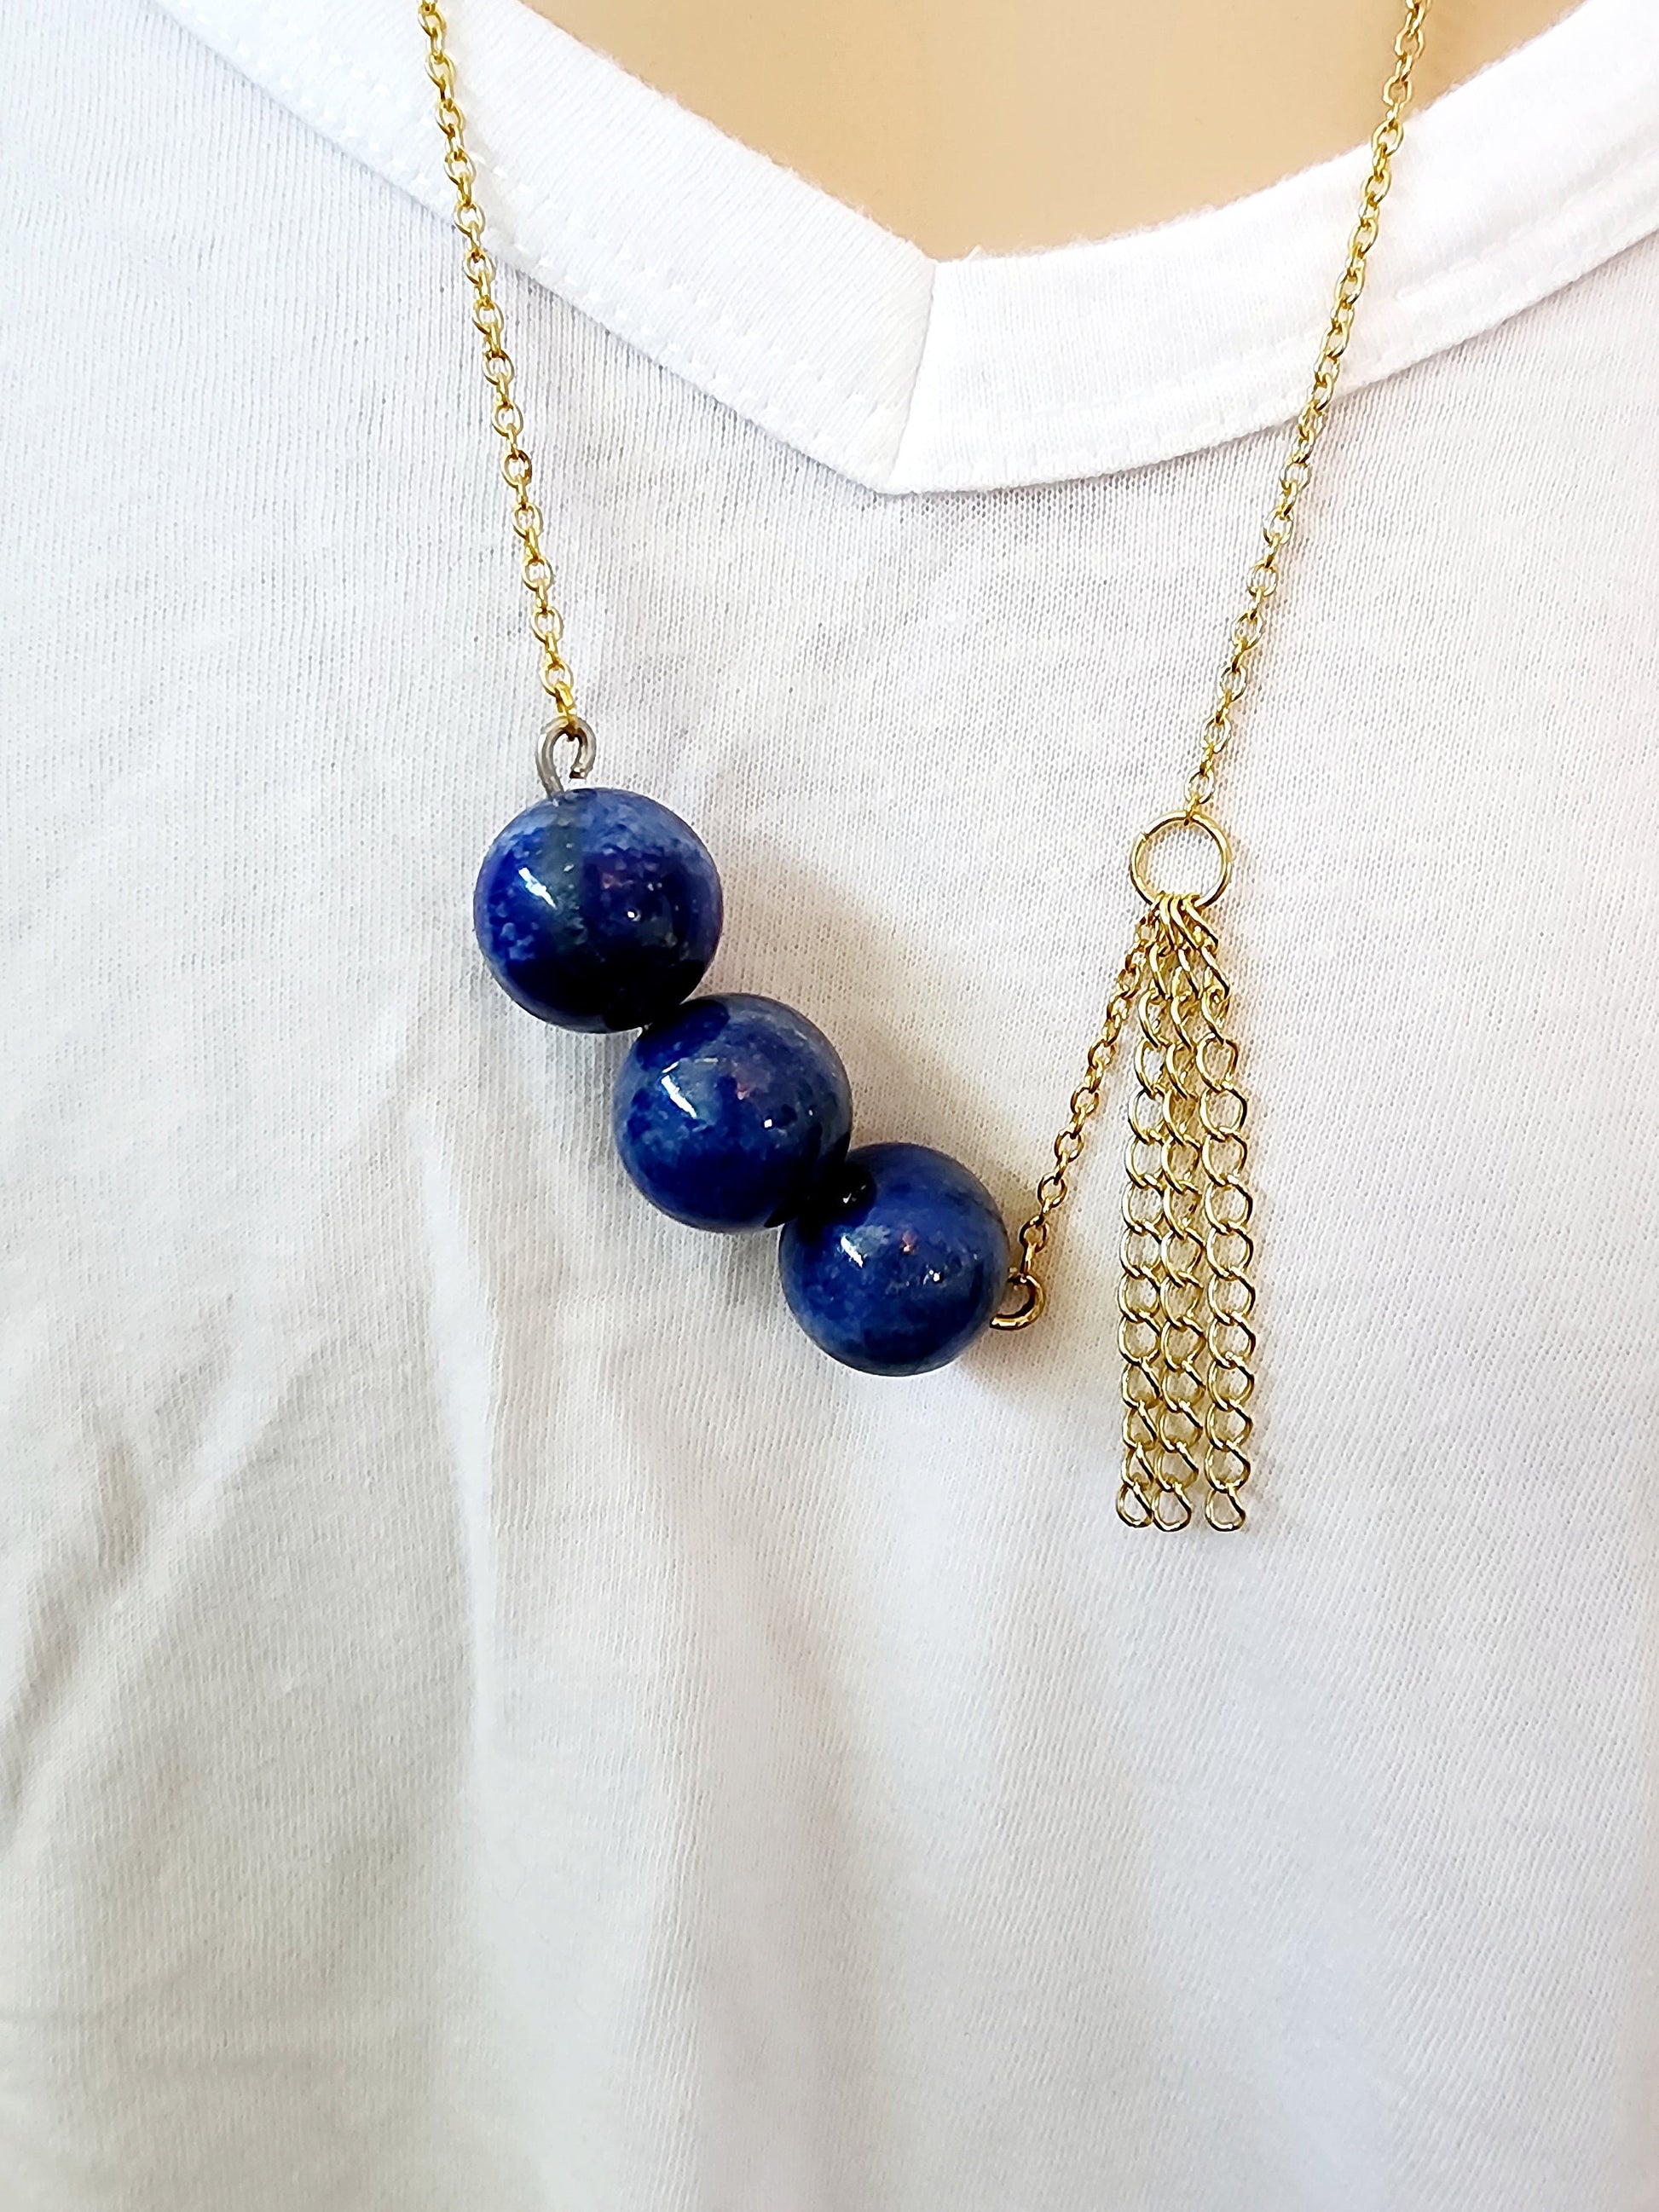 Triple Lapis Lazuli Necklace